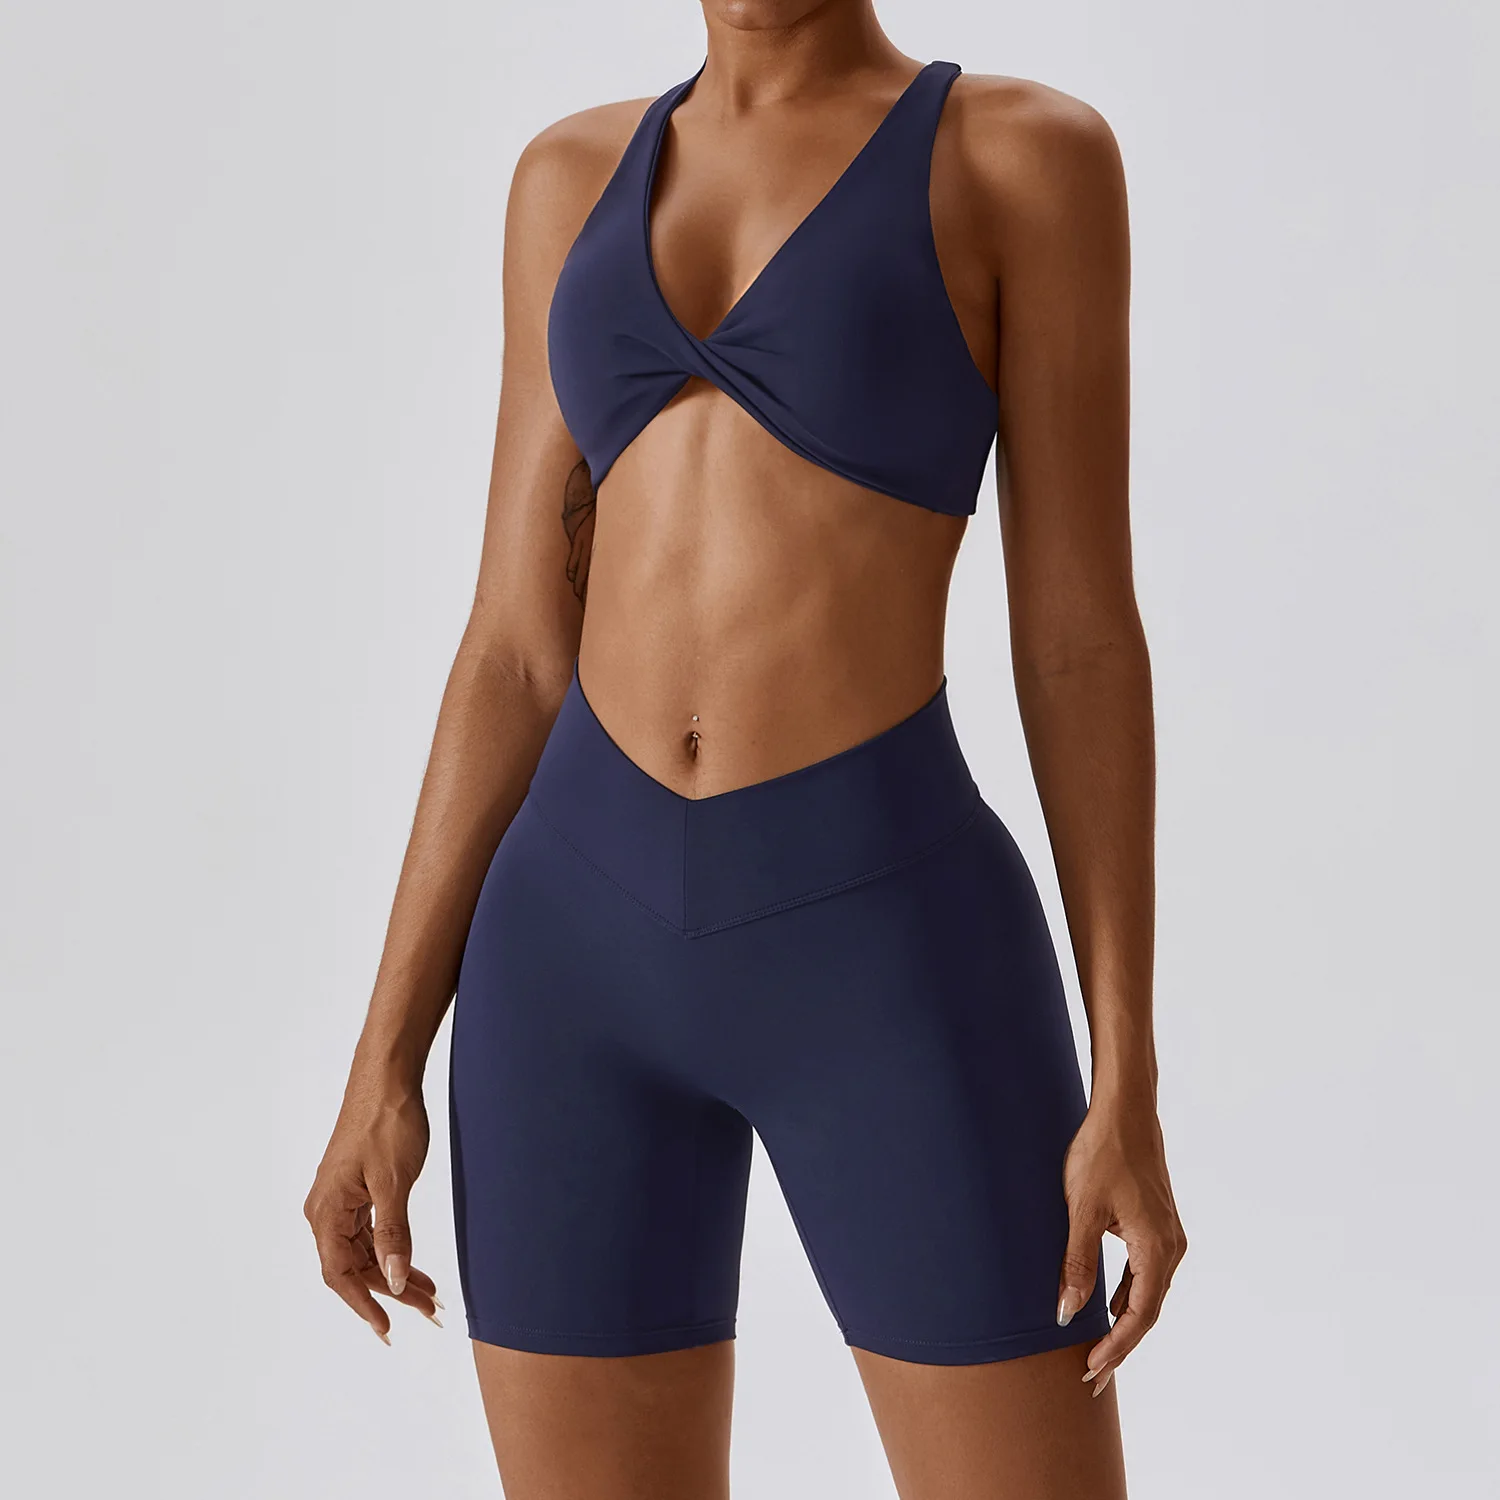 Wholesale Custom Breathable Scrunch Sexy Sports Bras Leggings Sets Workout Fitness Wear Sportswear Women Yoga Sets